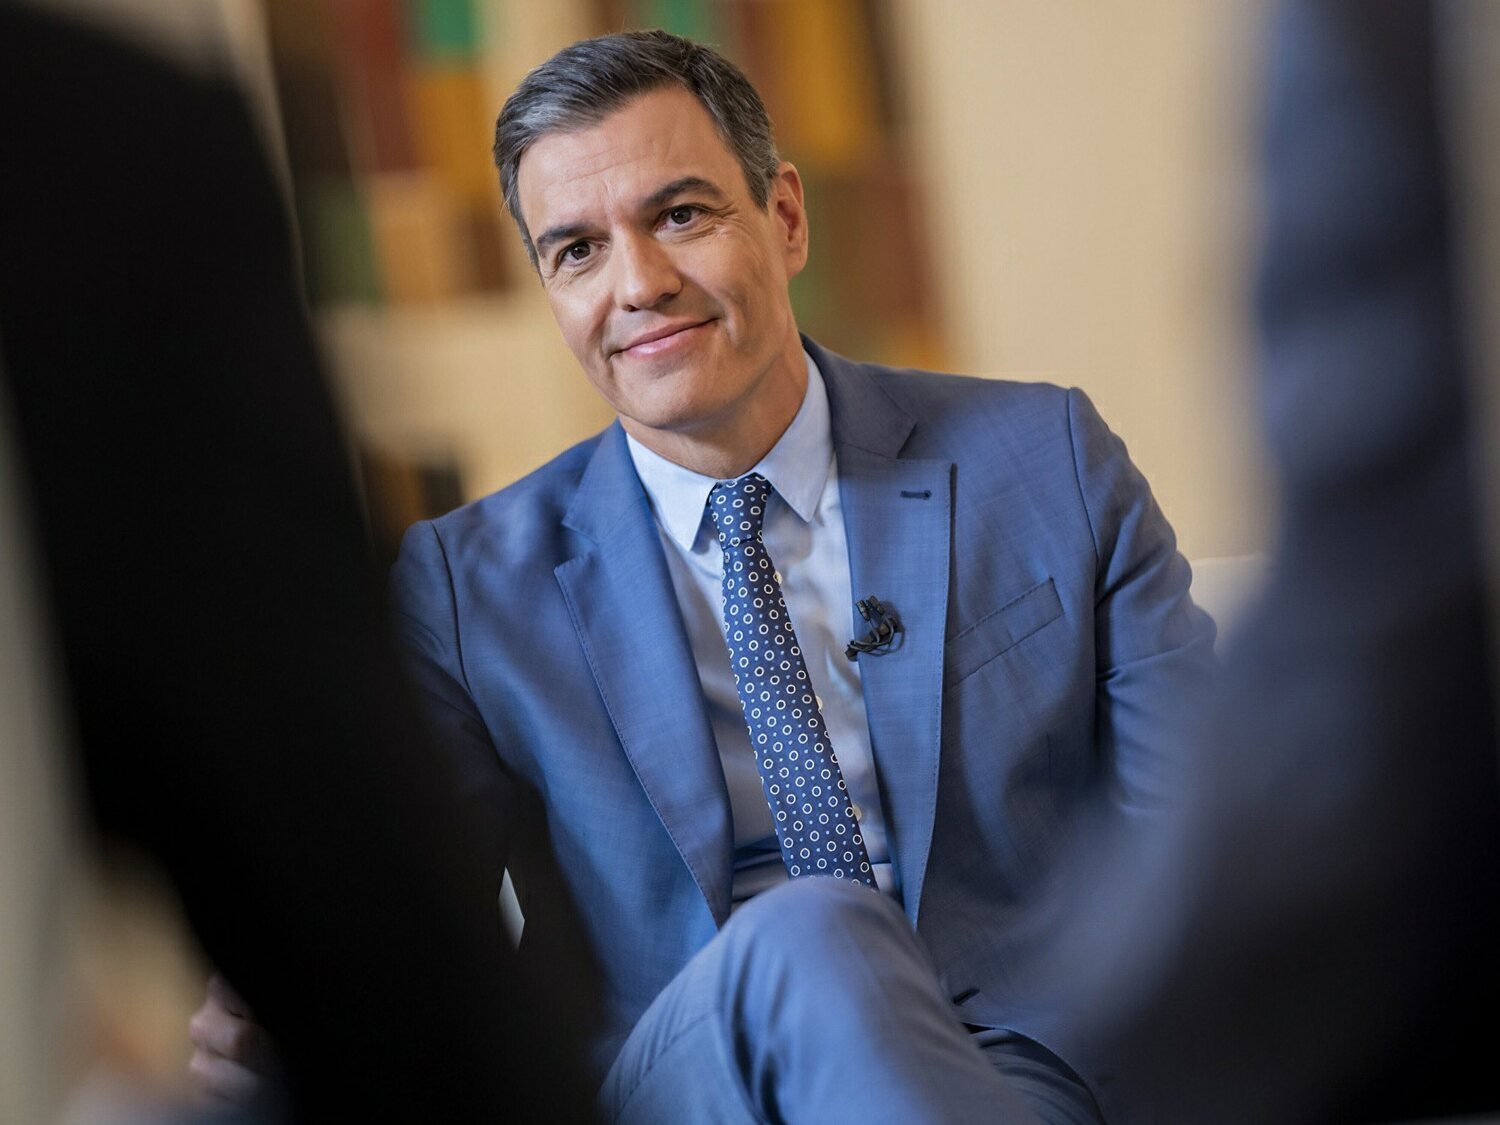 Pedro Sánchez tendrá su propia serie como presidente del Gobierno